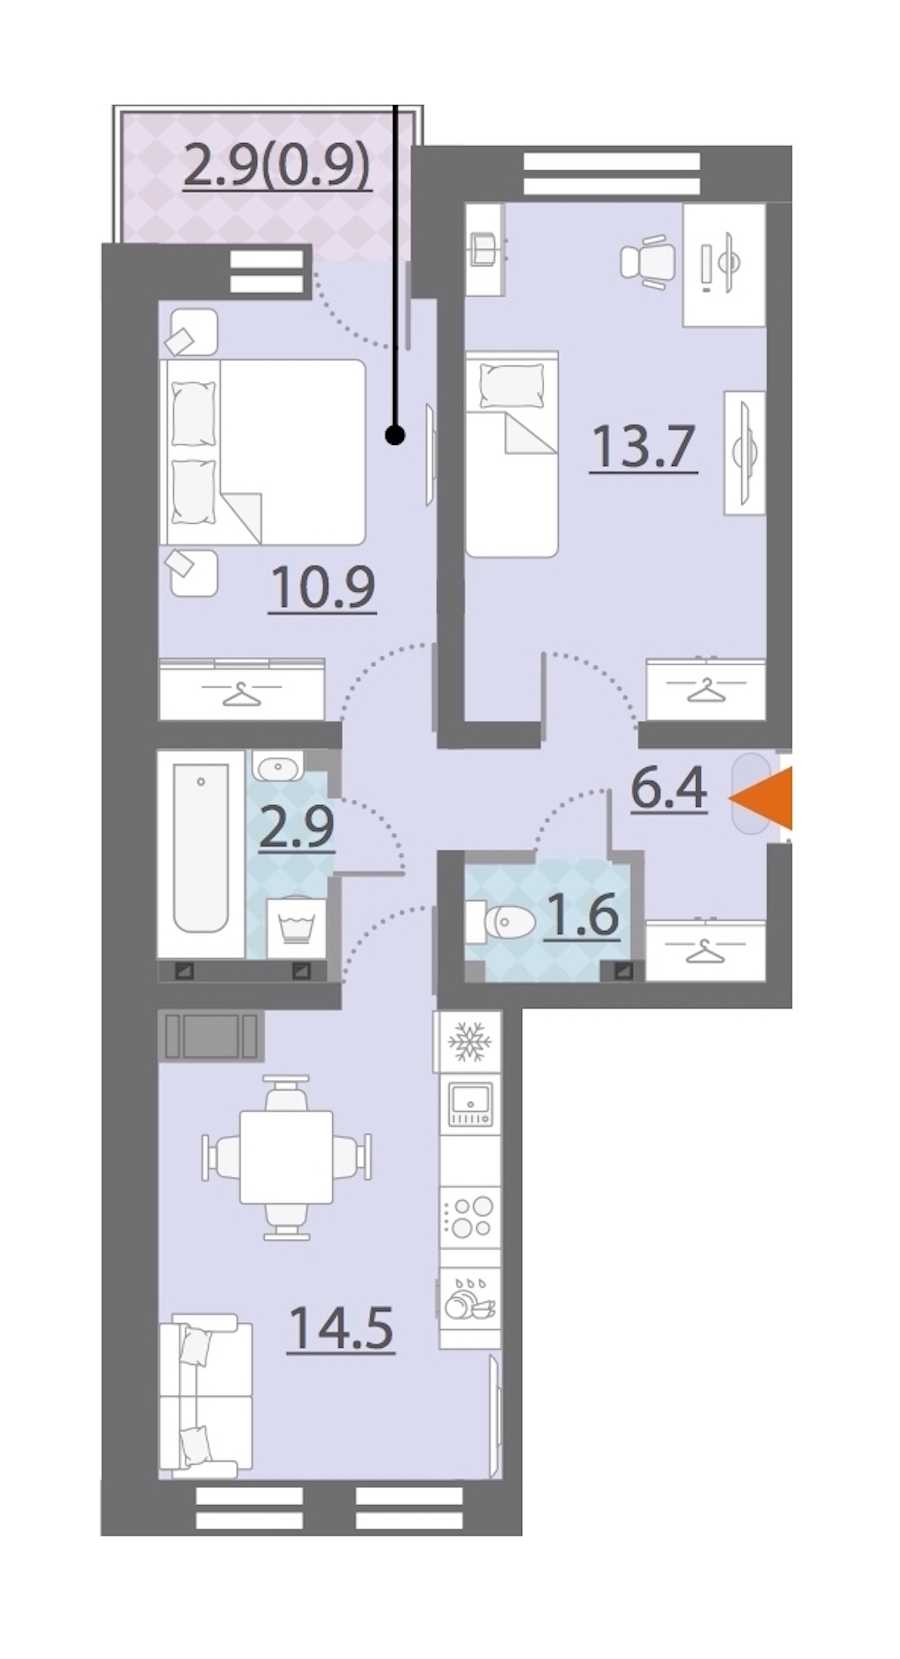 Двухкомнатная квартира в Группа ЛСР: площадь 50.9 м2 , этаж: 25 – купить в Санкт-Петербурге